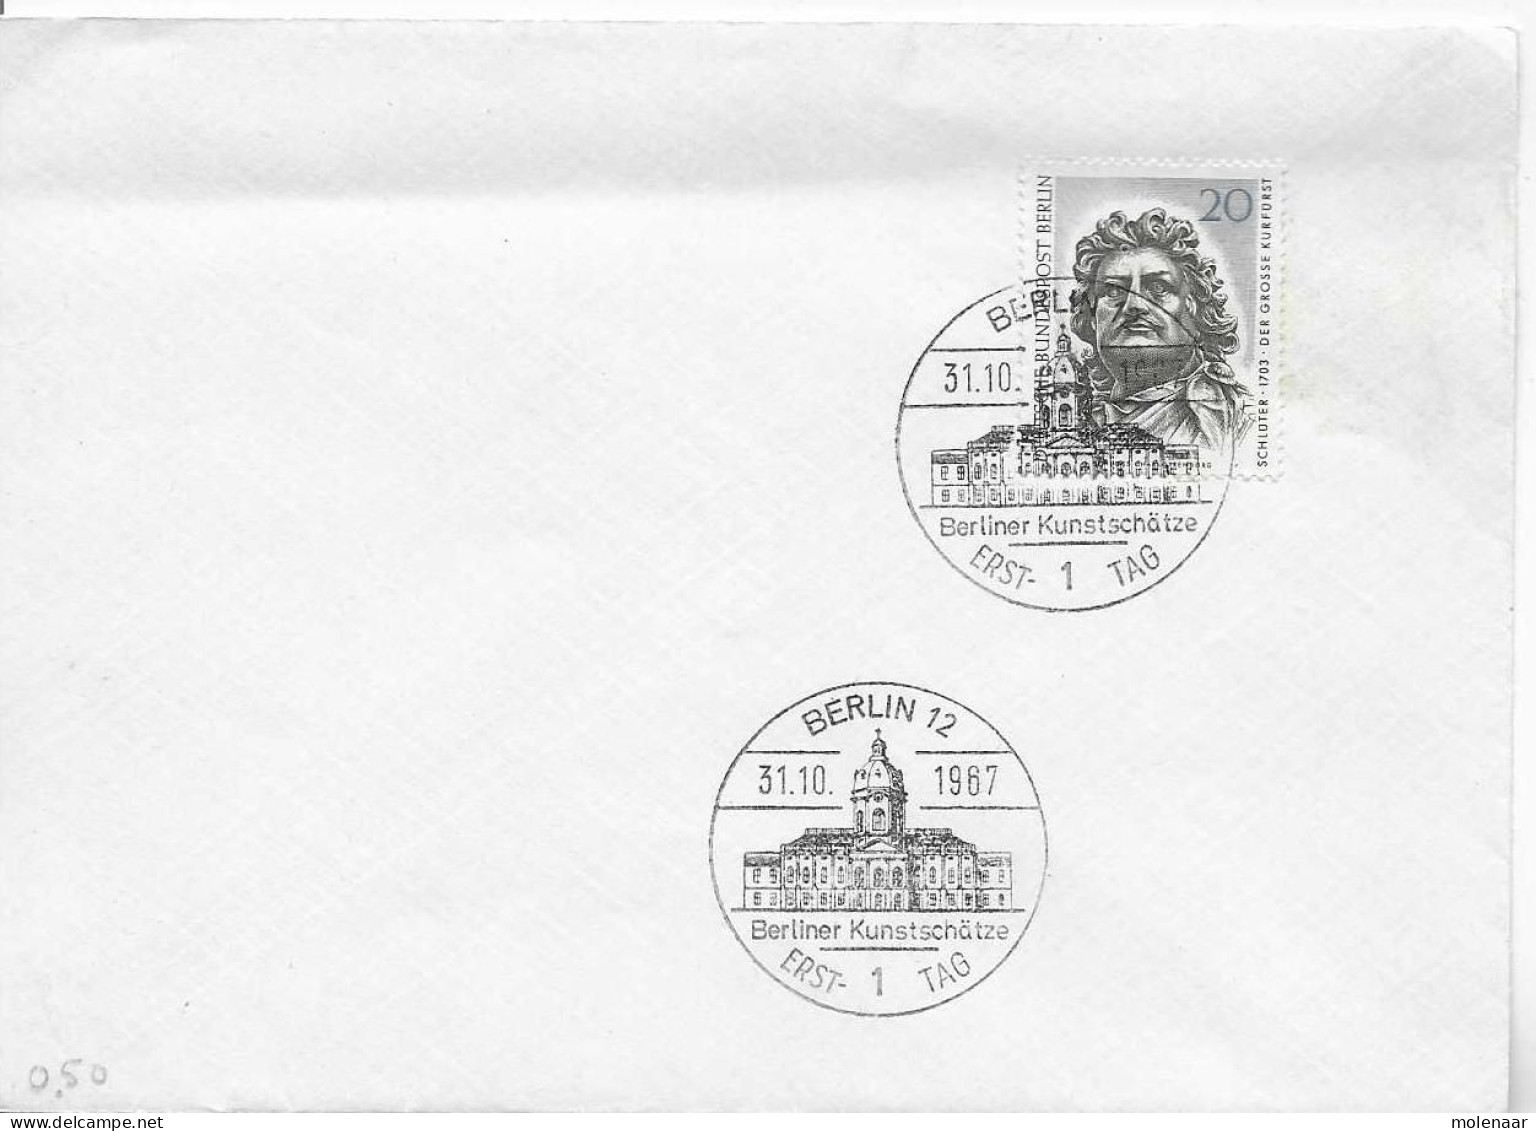 Postzegels > Europa > Duitsland > Berlijn > 1e Dag FDC (brieven) > 1948-1970 Met No. 303 (17155) - Blocks & Sheetlets